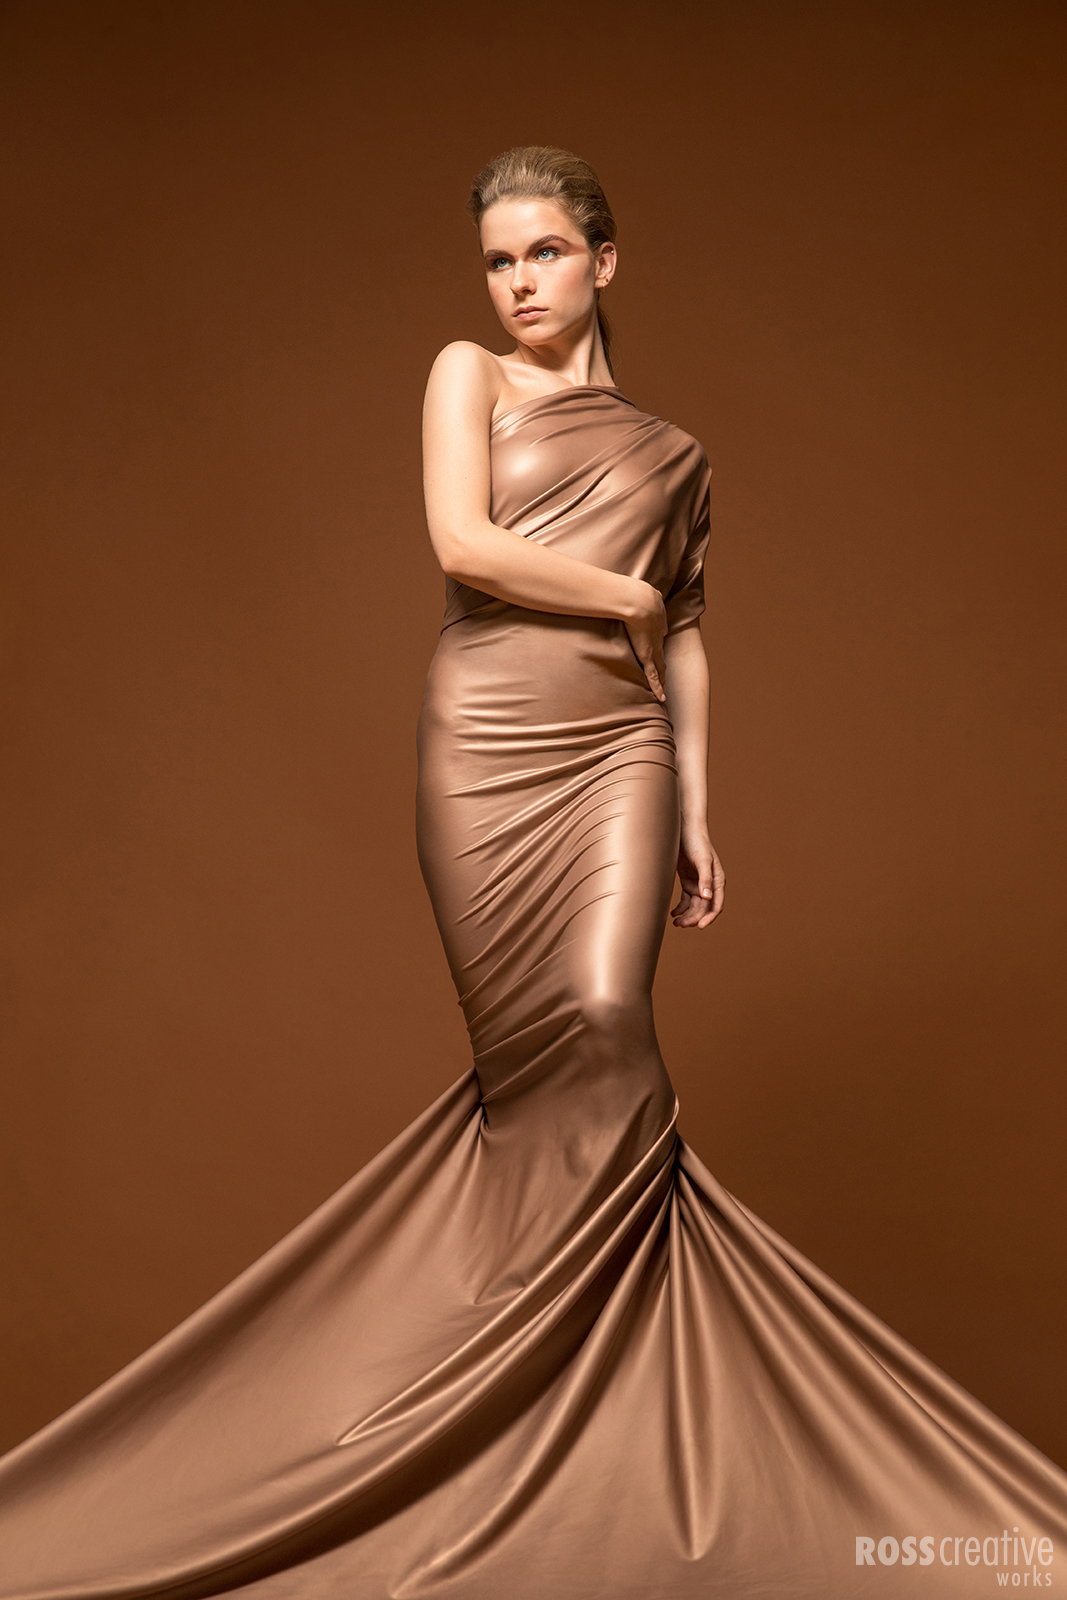 beautiful woman wearing chocolate colored dress